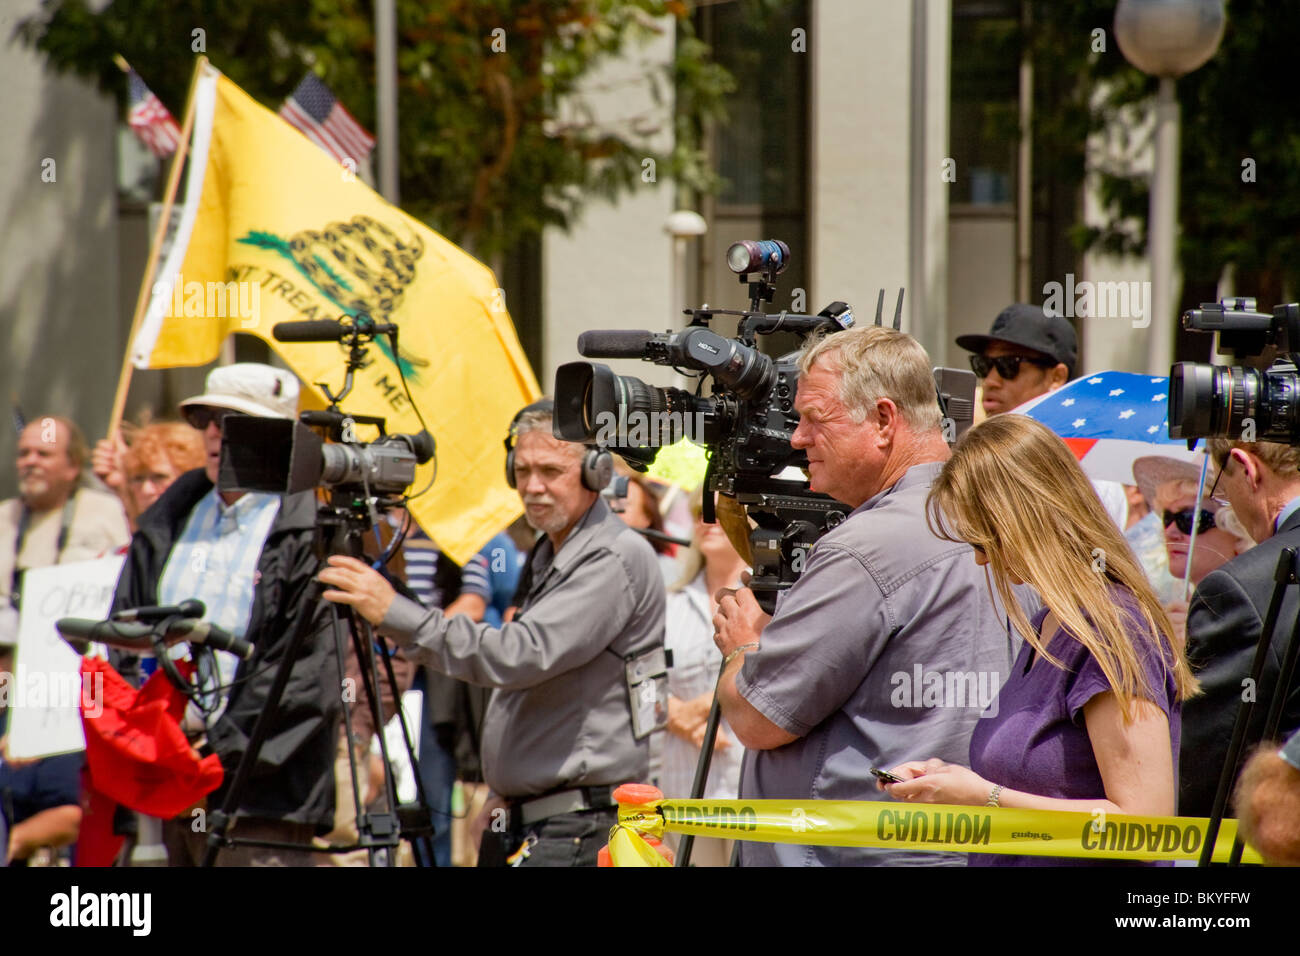 Television news cameramen couvrent un "Tea Party" le 15 avril (jour de l'impôt) à Santa Ana, Californie. Remarque d'un drapeau en arrière-plan. Banque D'Images